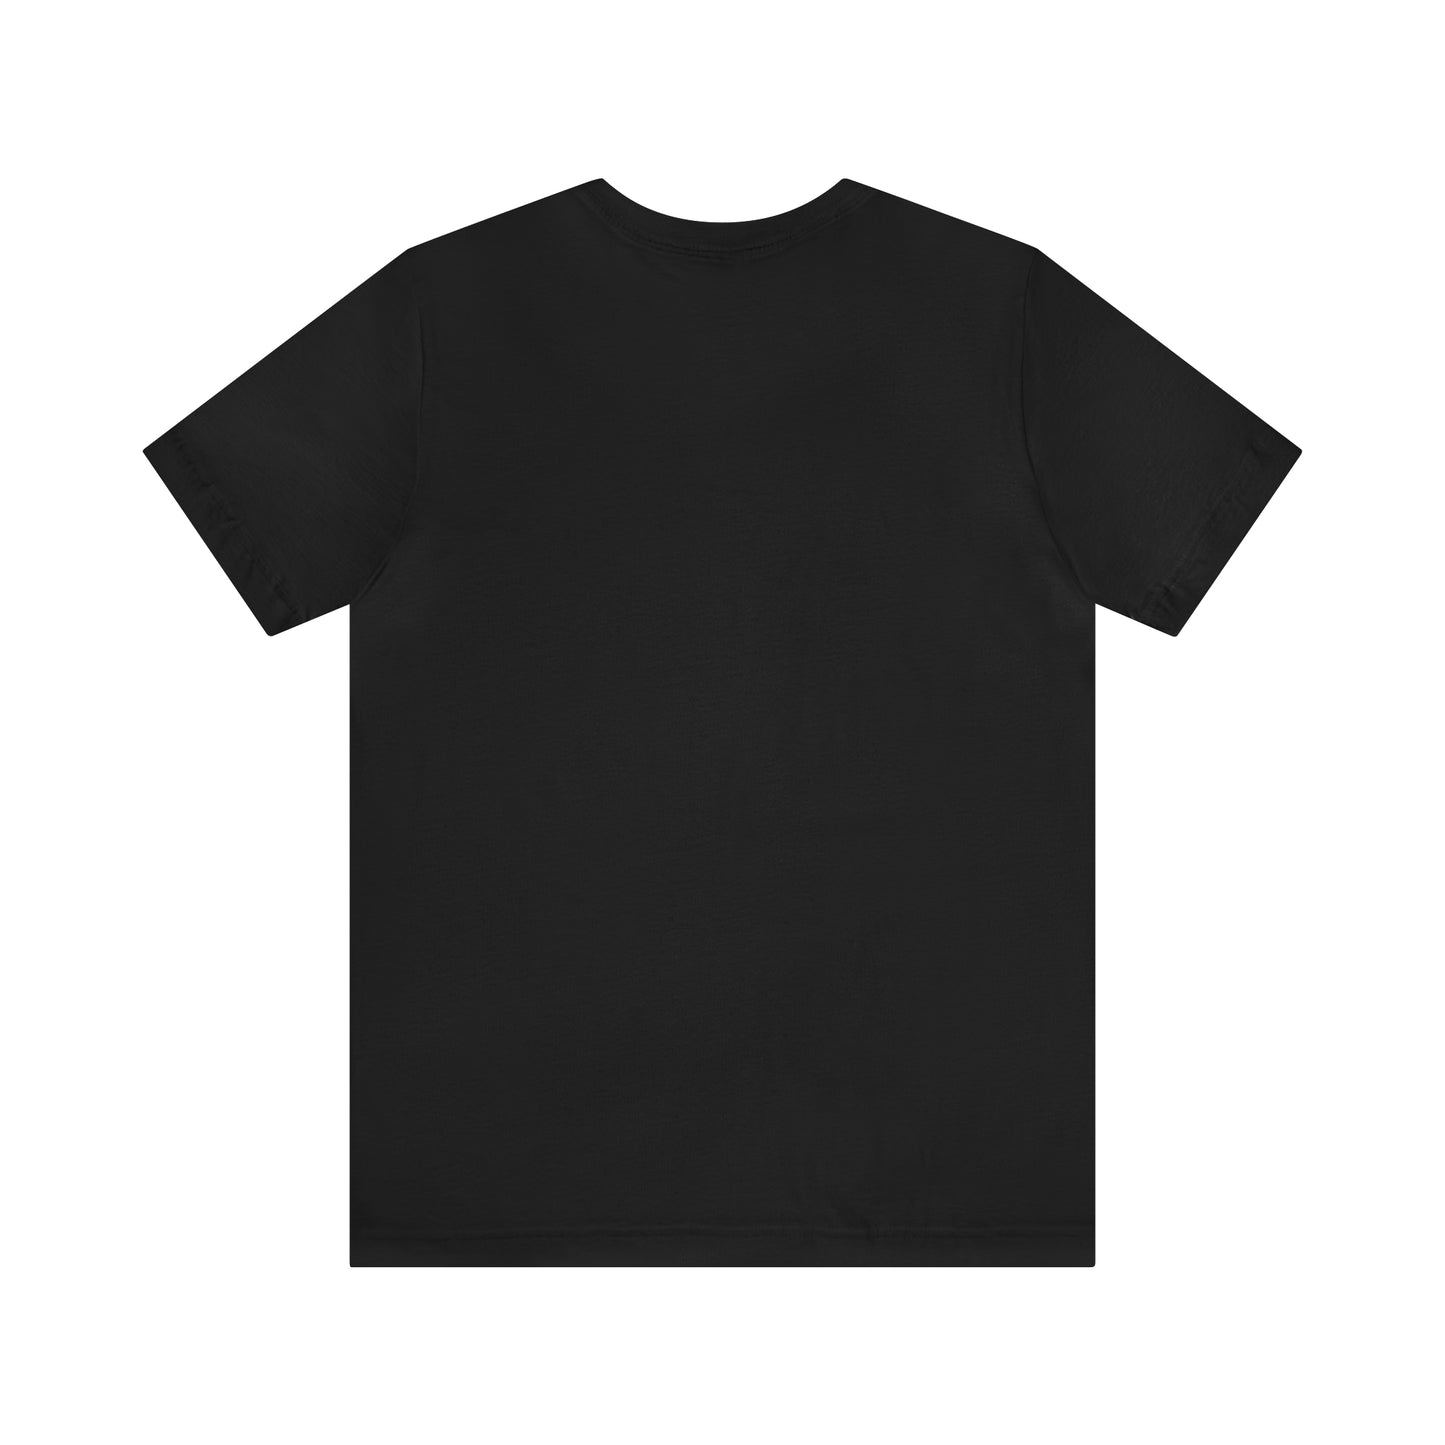 Lunenburg, Mass Pickleball Short Sleeve T-Shirt